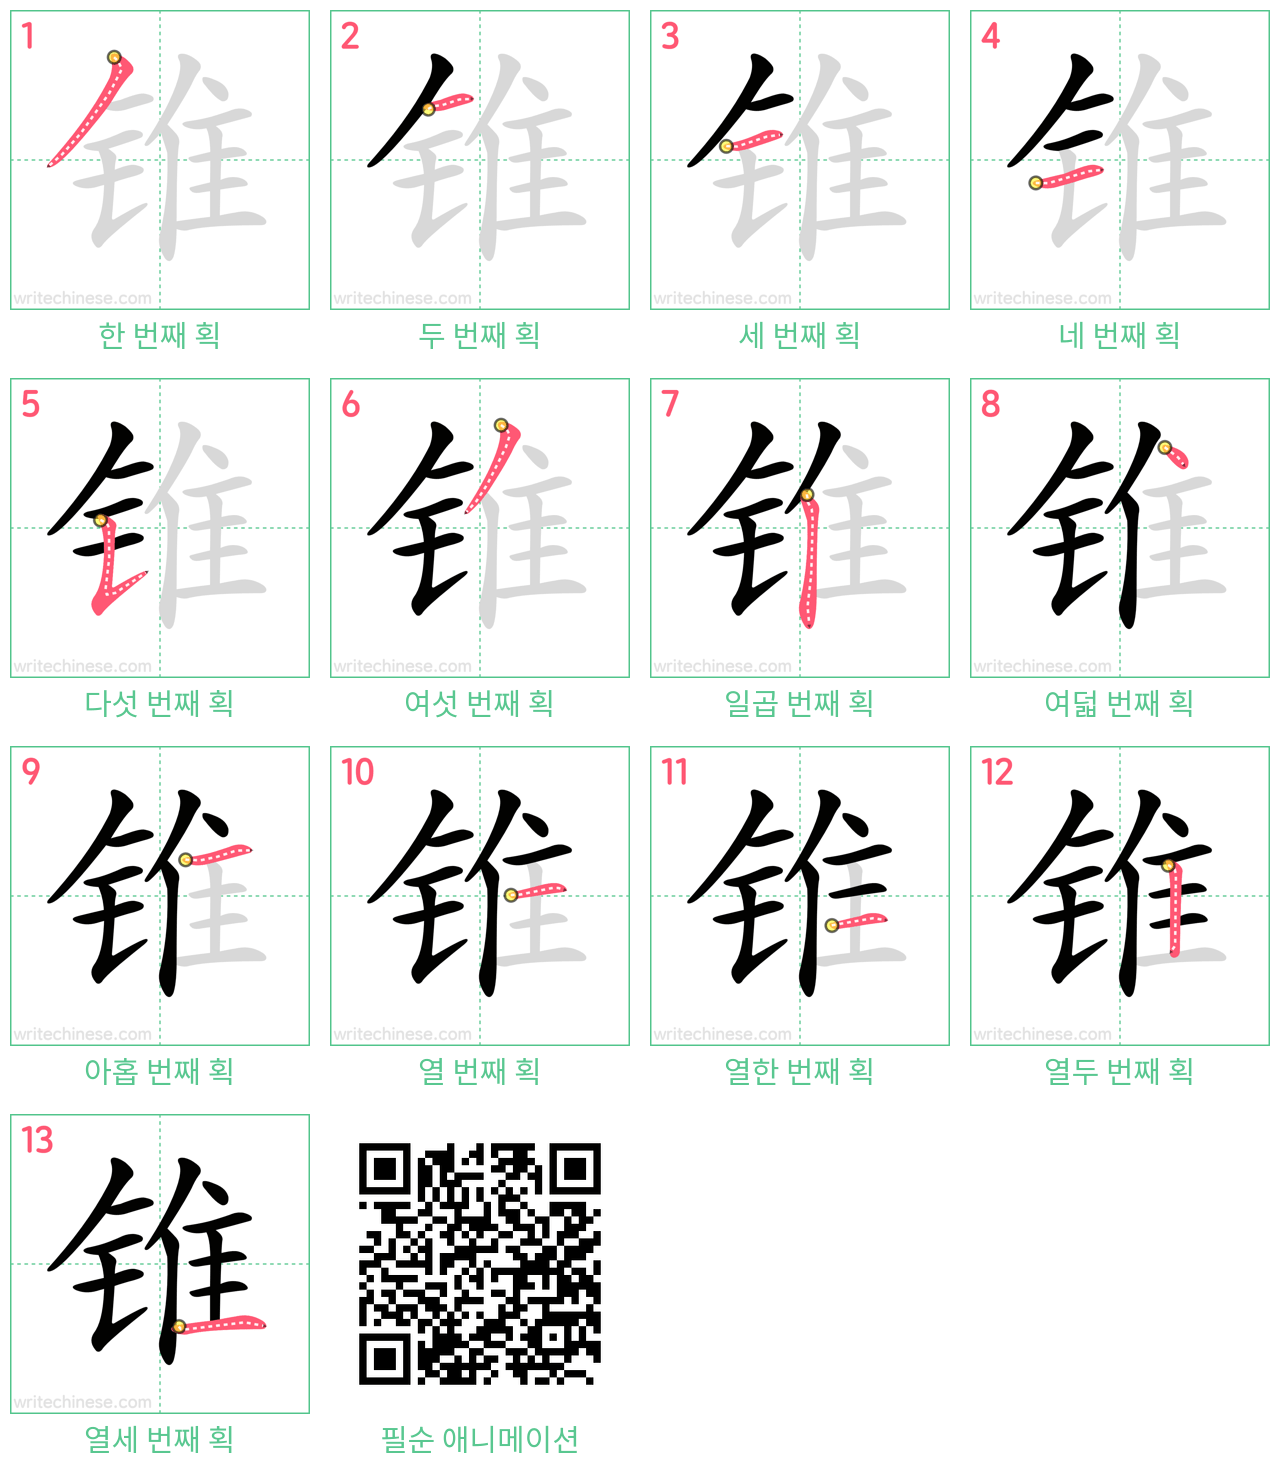 锥 step-by-step stroke order diagrams